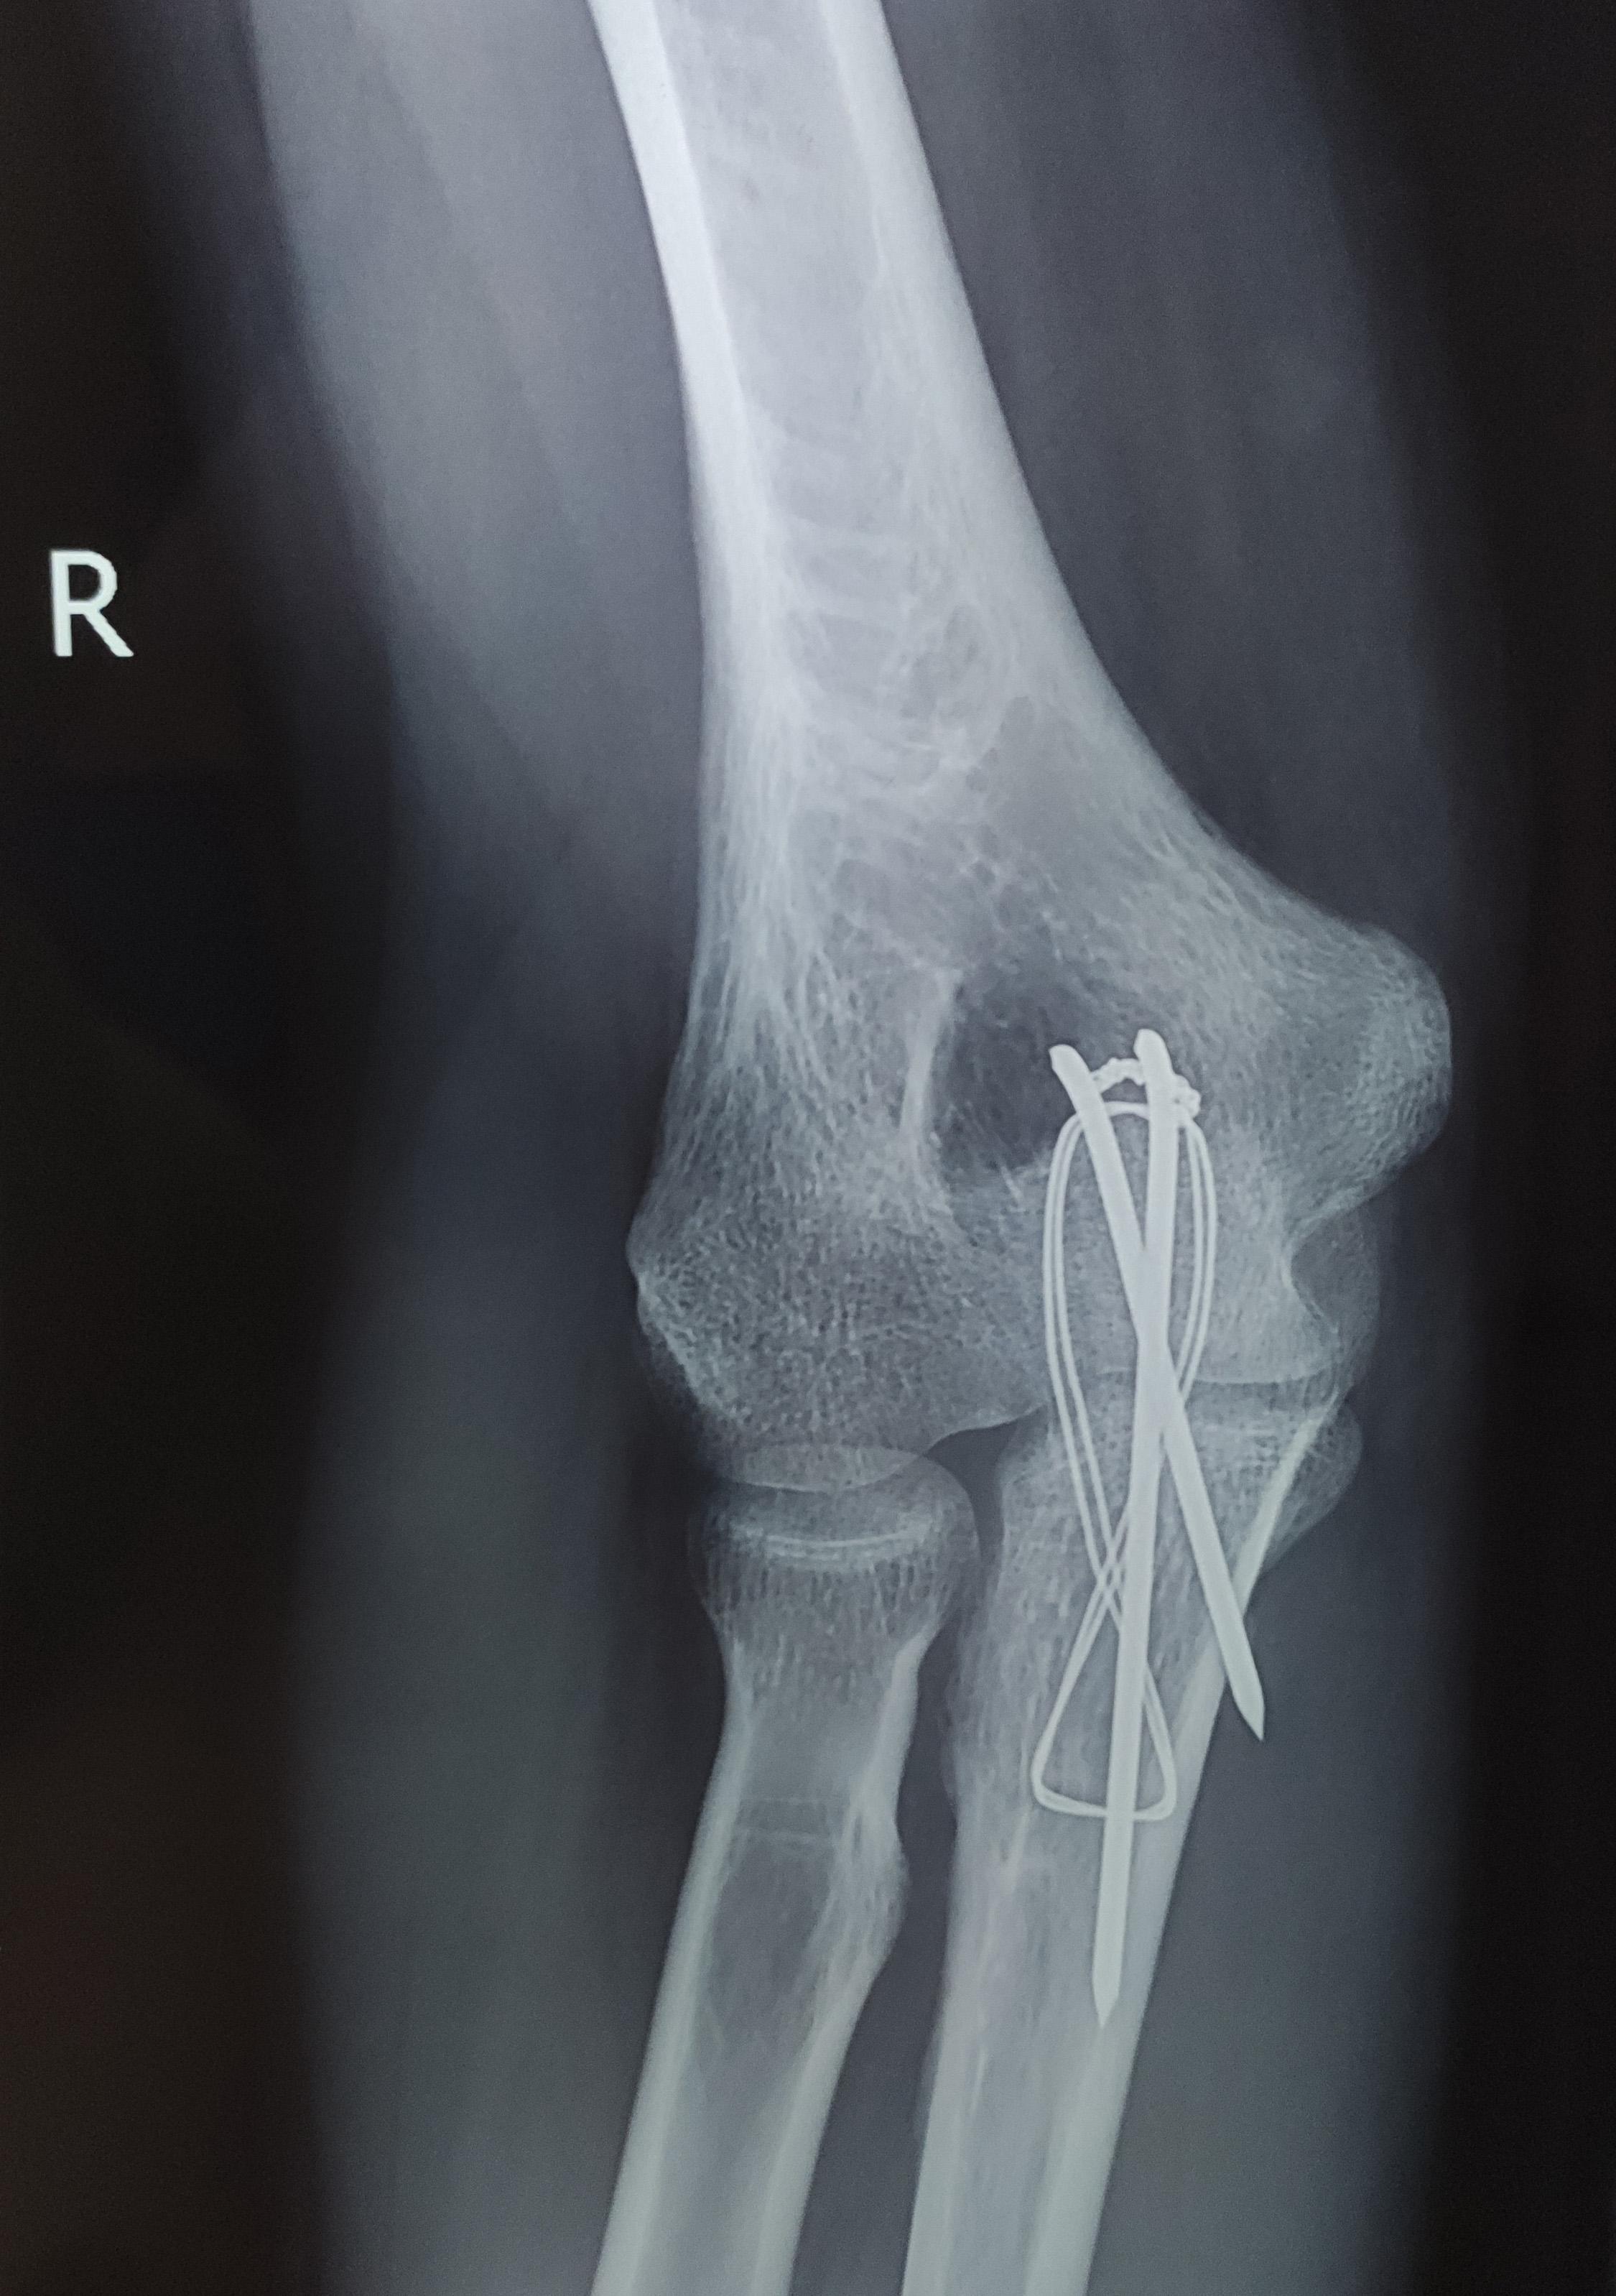 应用解剖型锁定钢板内固定治疗尺骨鹰嘴骨折的病例对照研究_参考网